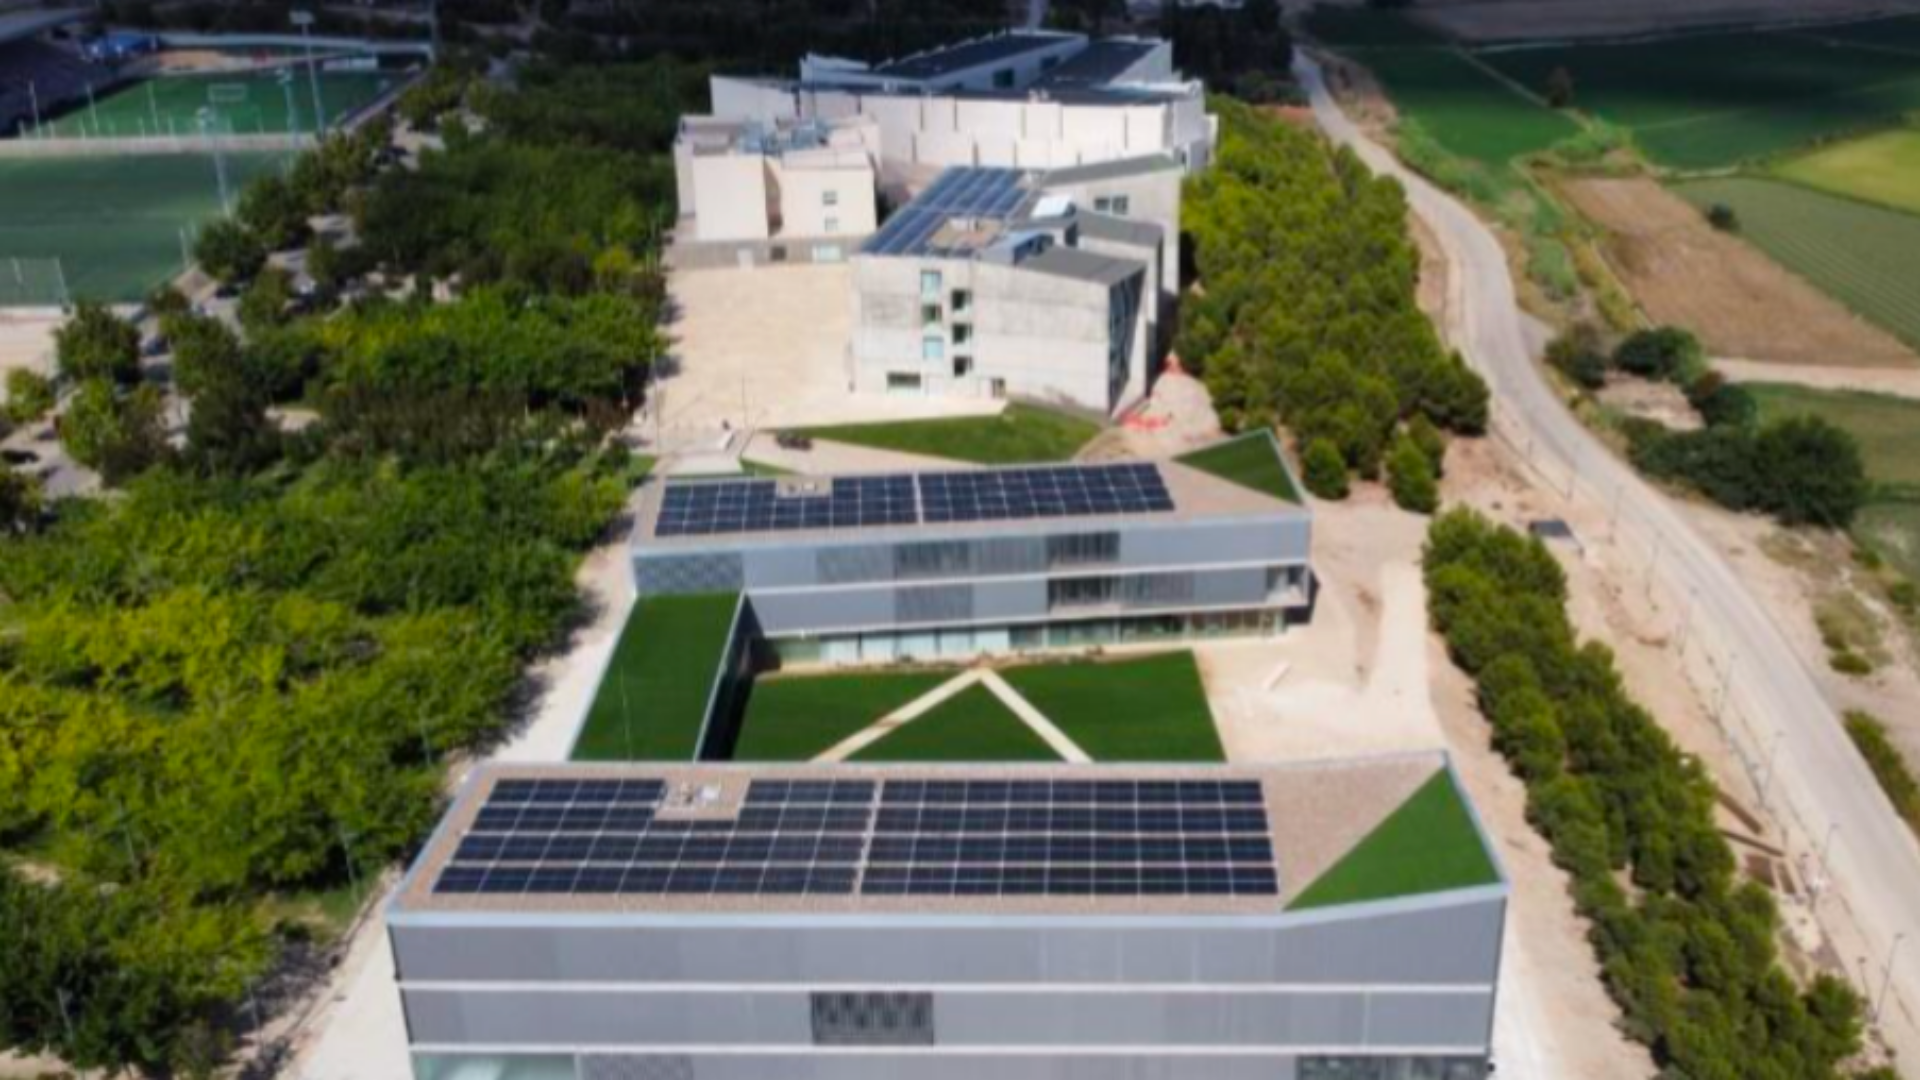 FINALISTA Mejor iniciativa de Edificación sostenible y/o saludable en Aragón: Aulario Universidad San Jorge de Idom